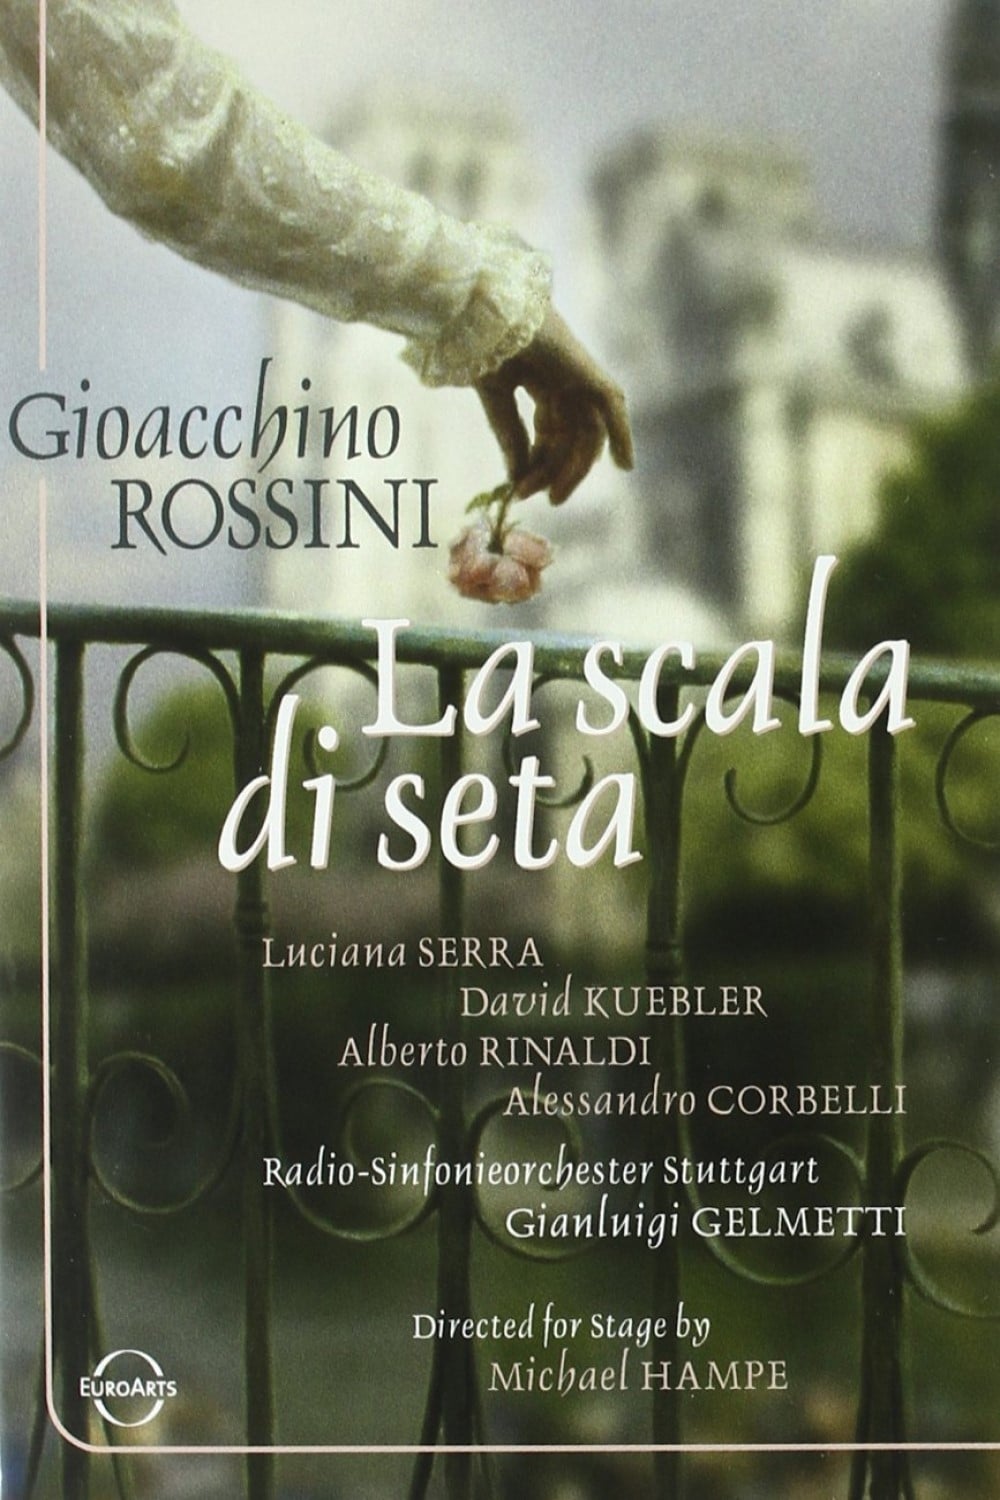 La Scala di Seta - Rossini